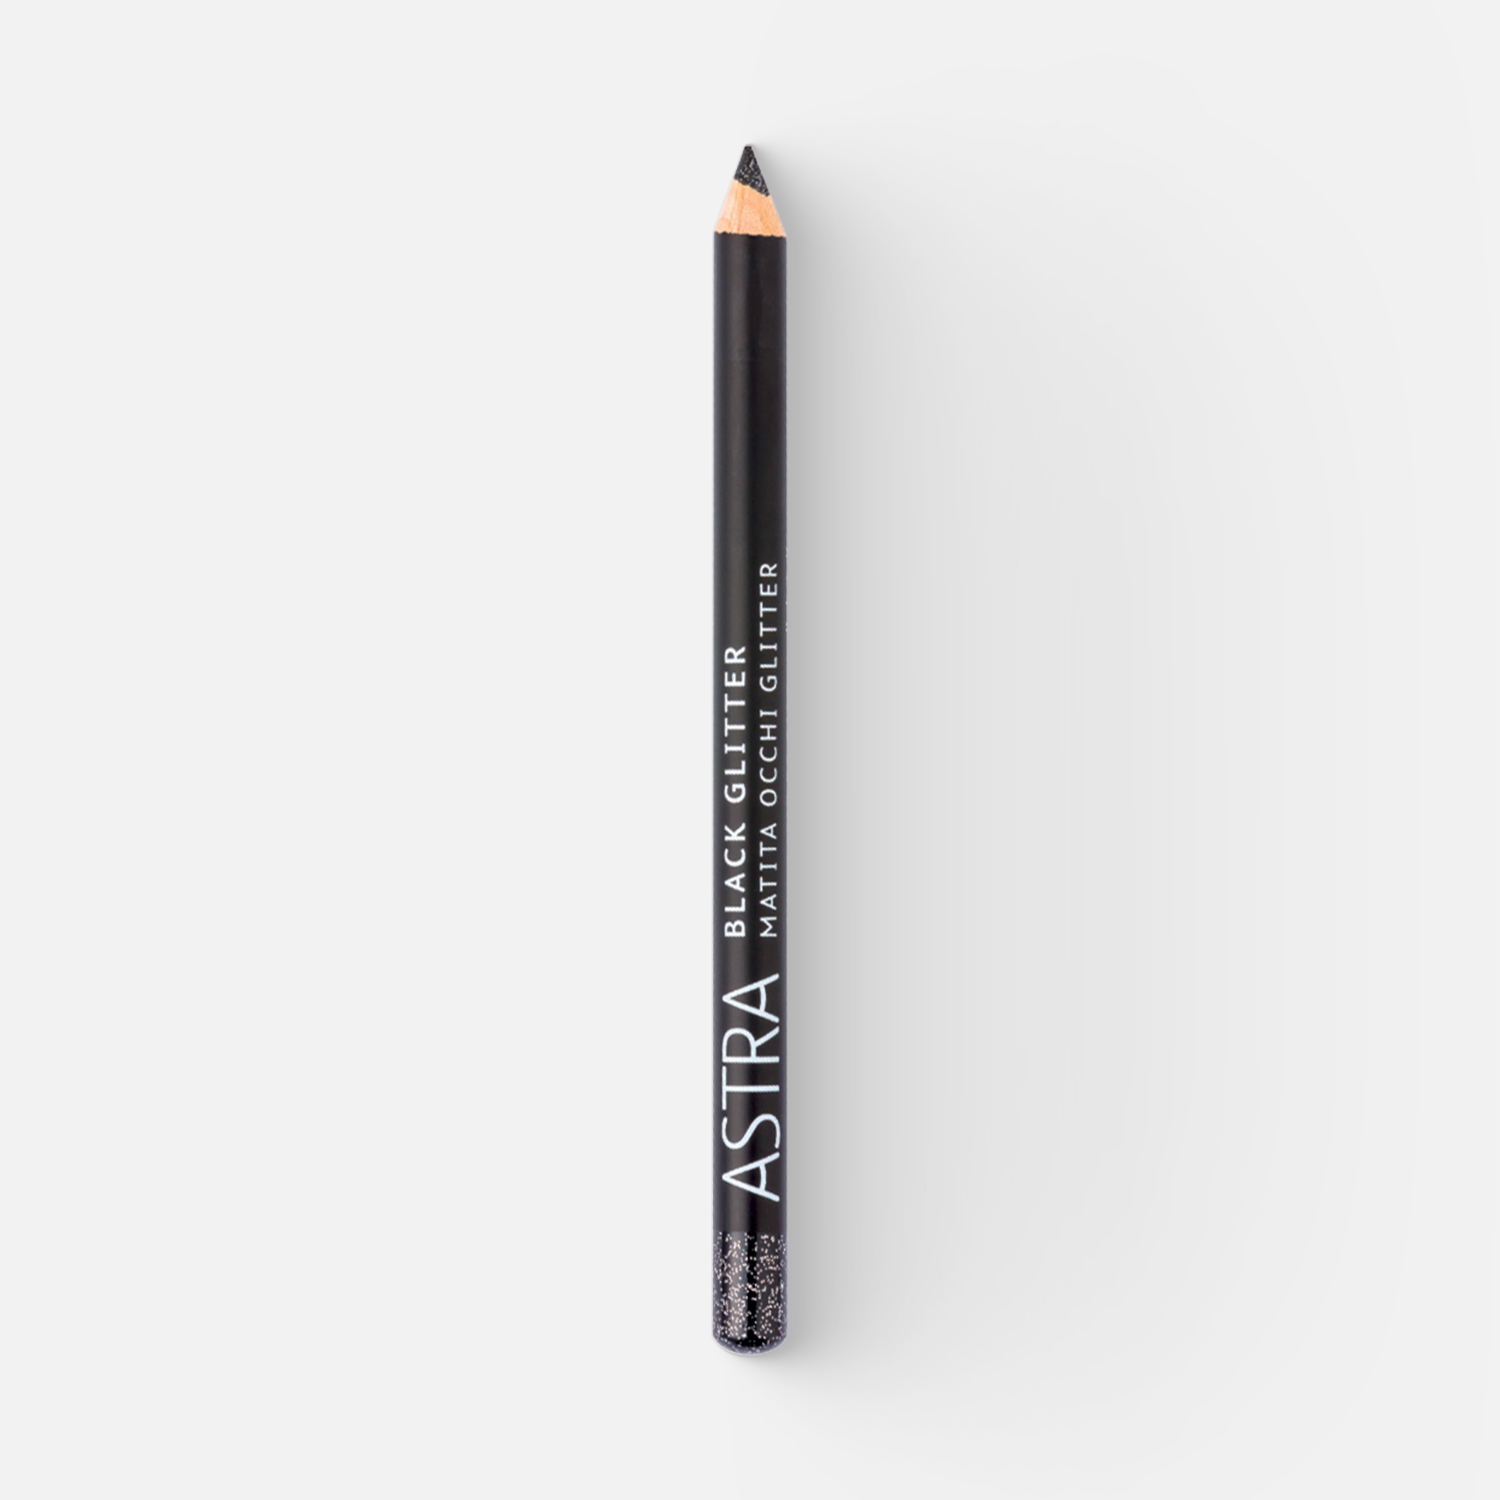 Карандаш для глаз Astra Black glitter контурный BG 7 г карандаш для губ astra pure beauty контурный тон 06 4 г